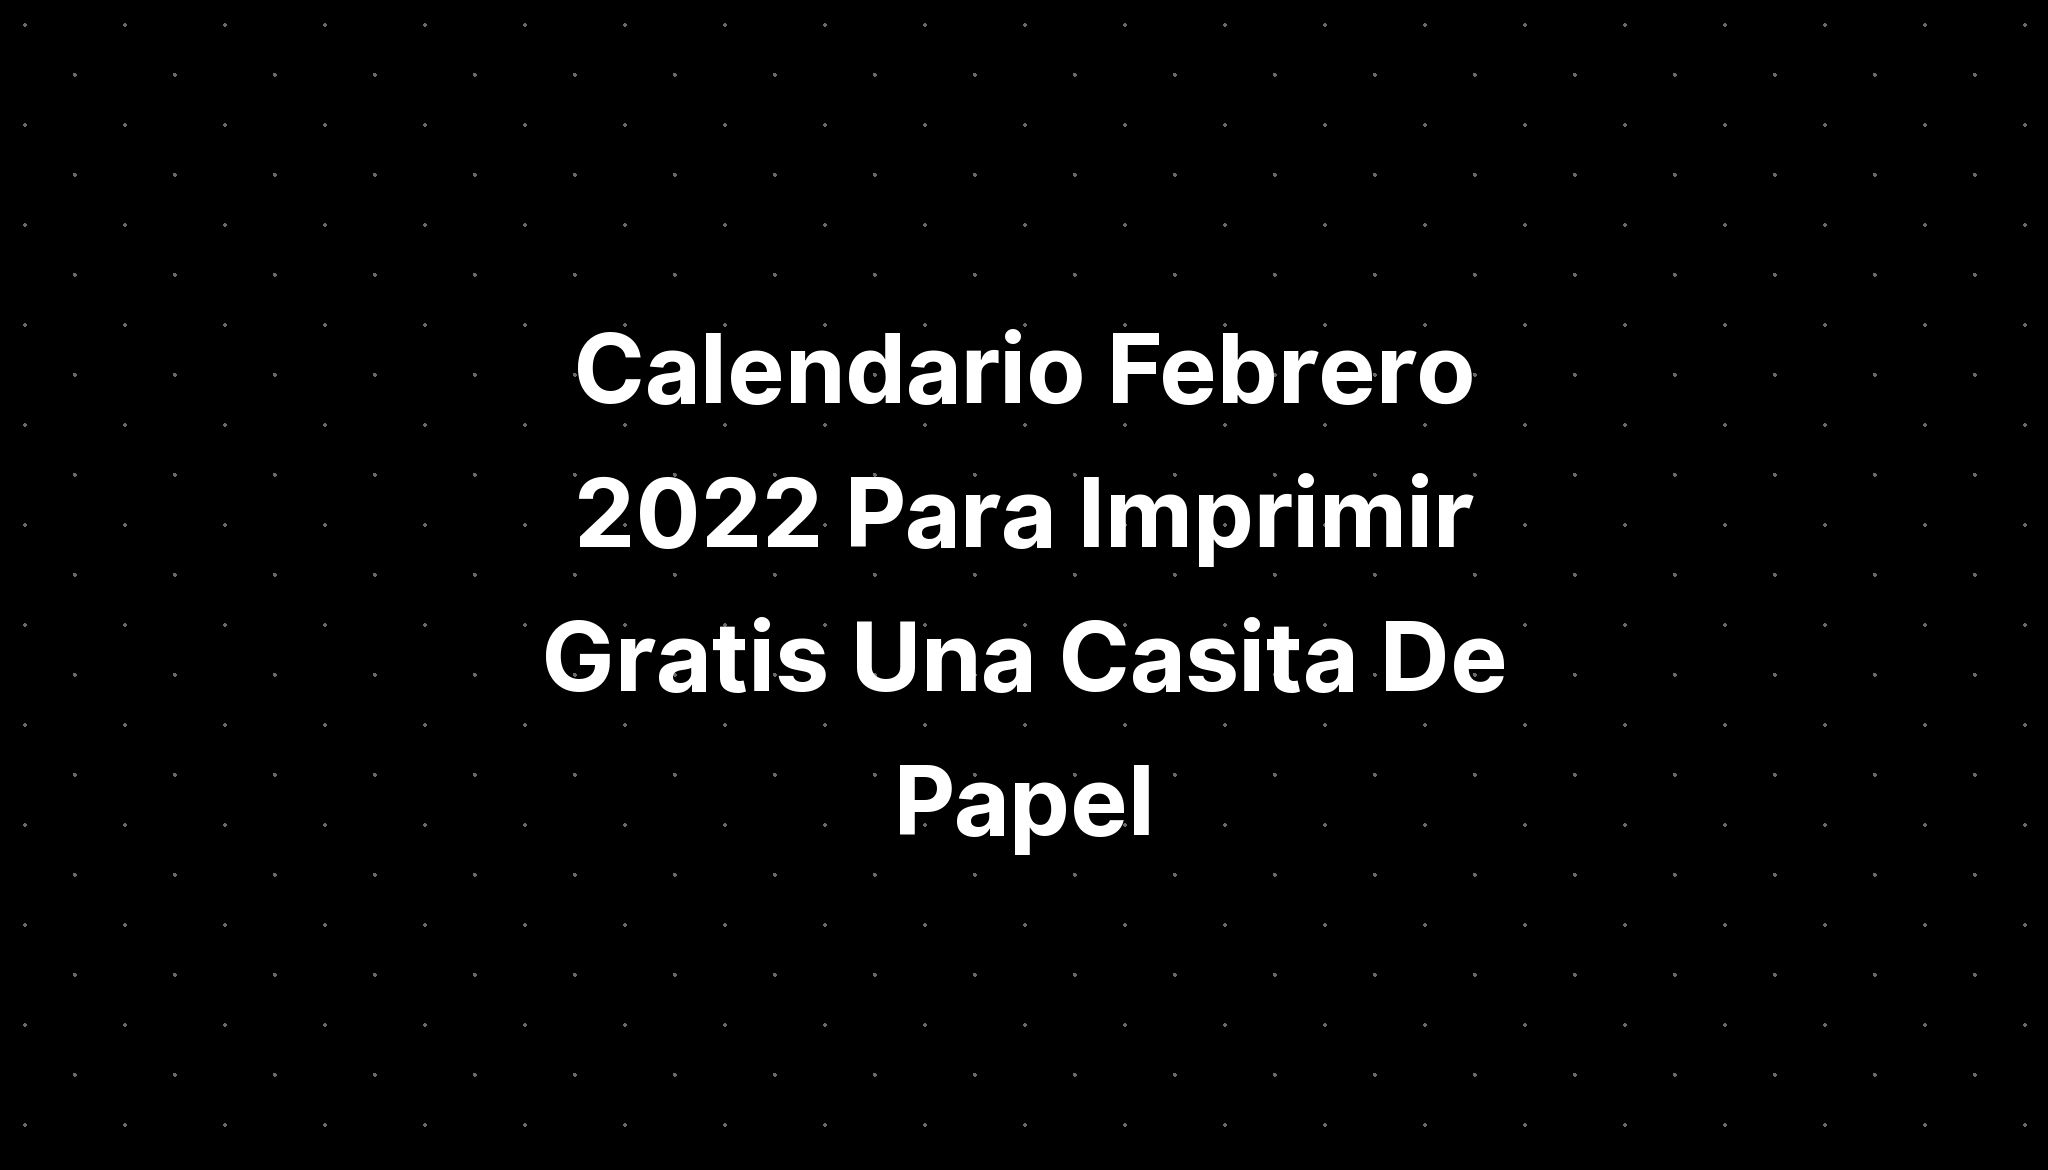 Calendario Febrero 2022 Para Imprimir Gratis Una Casita De Papel Imagesee